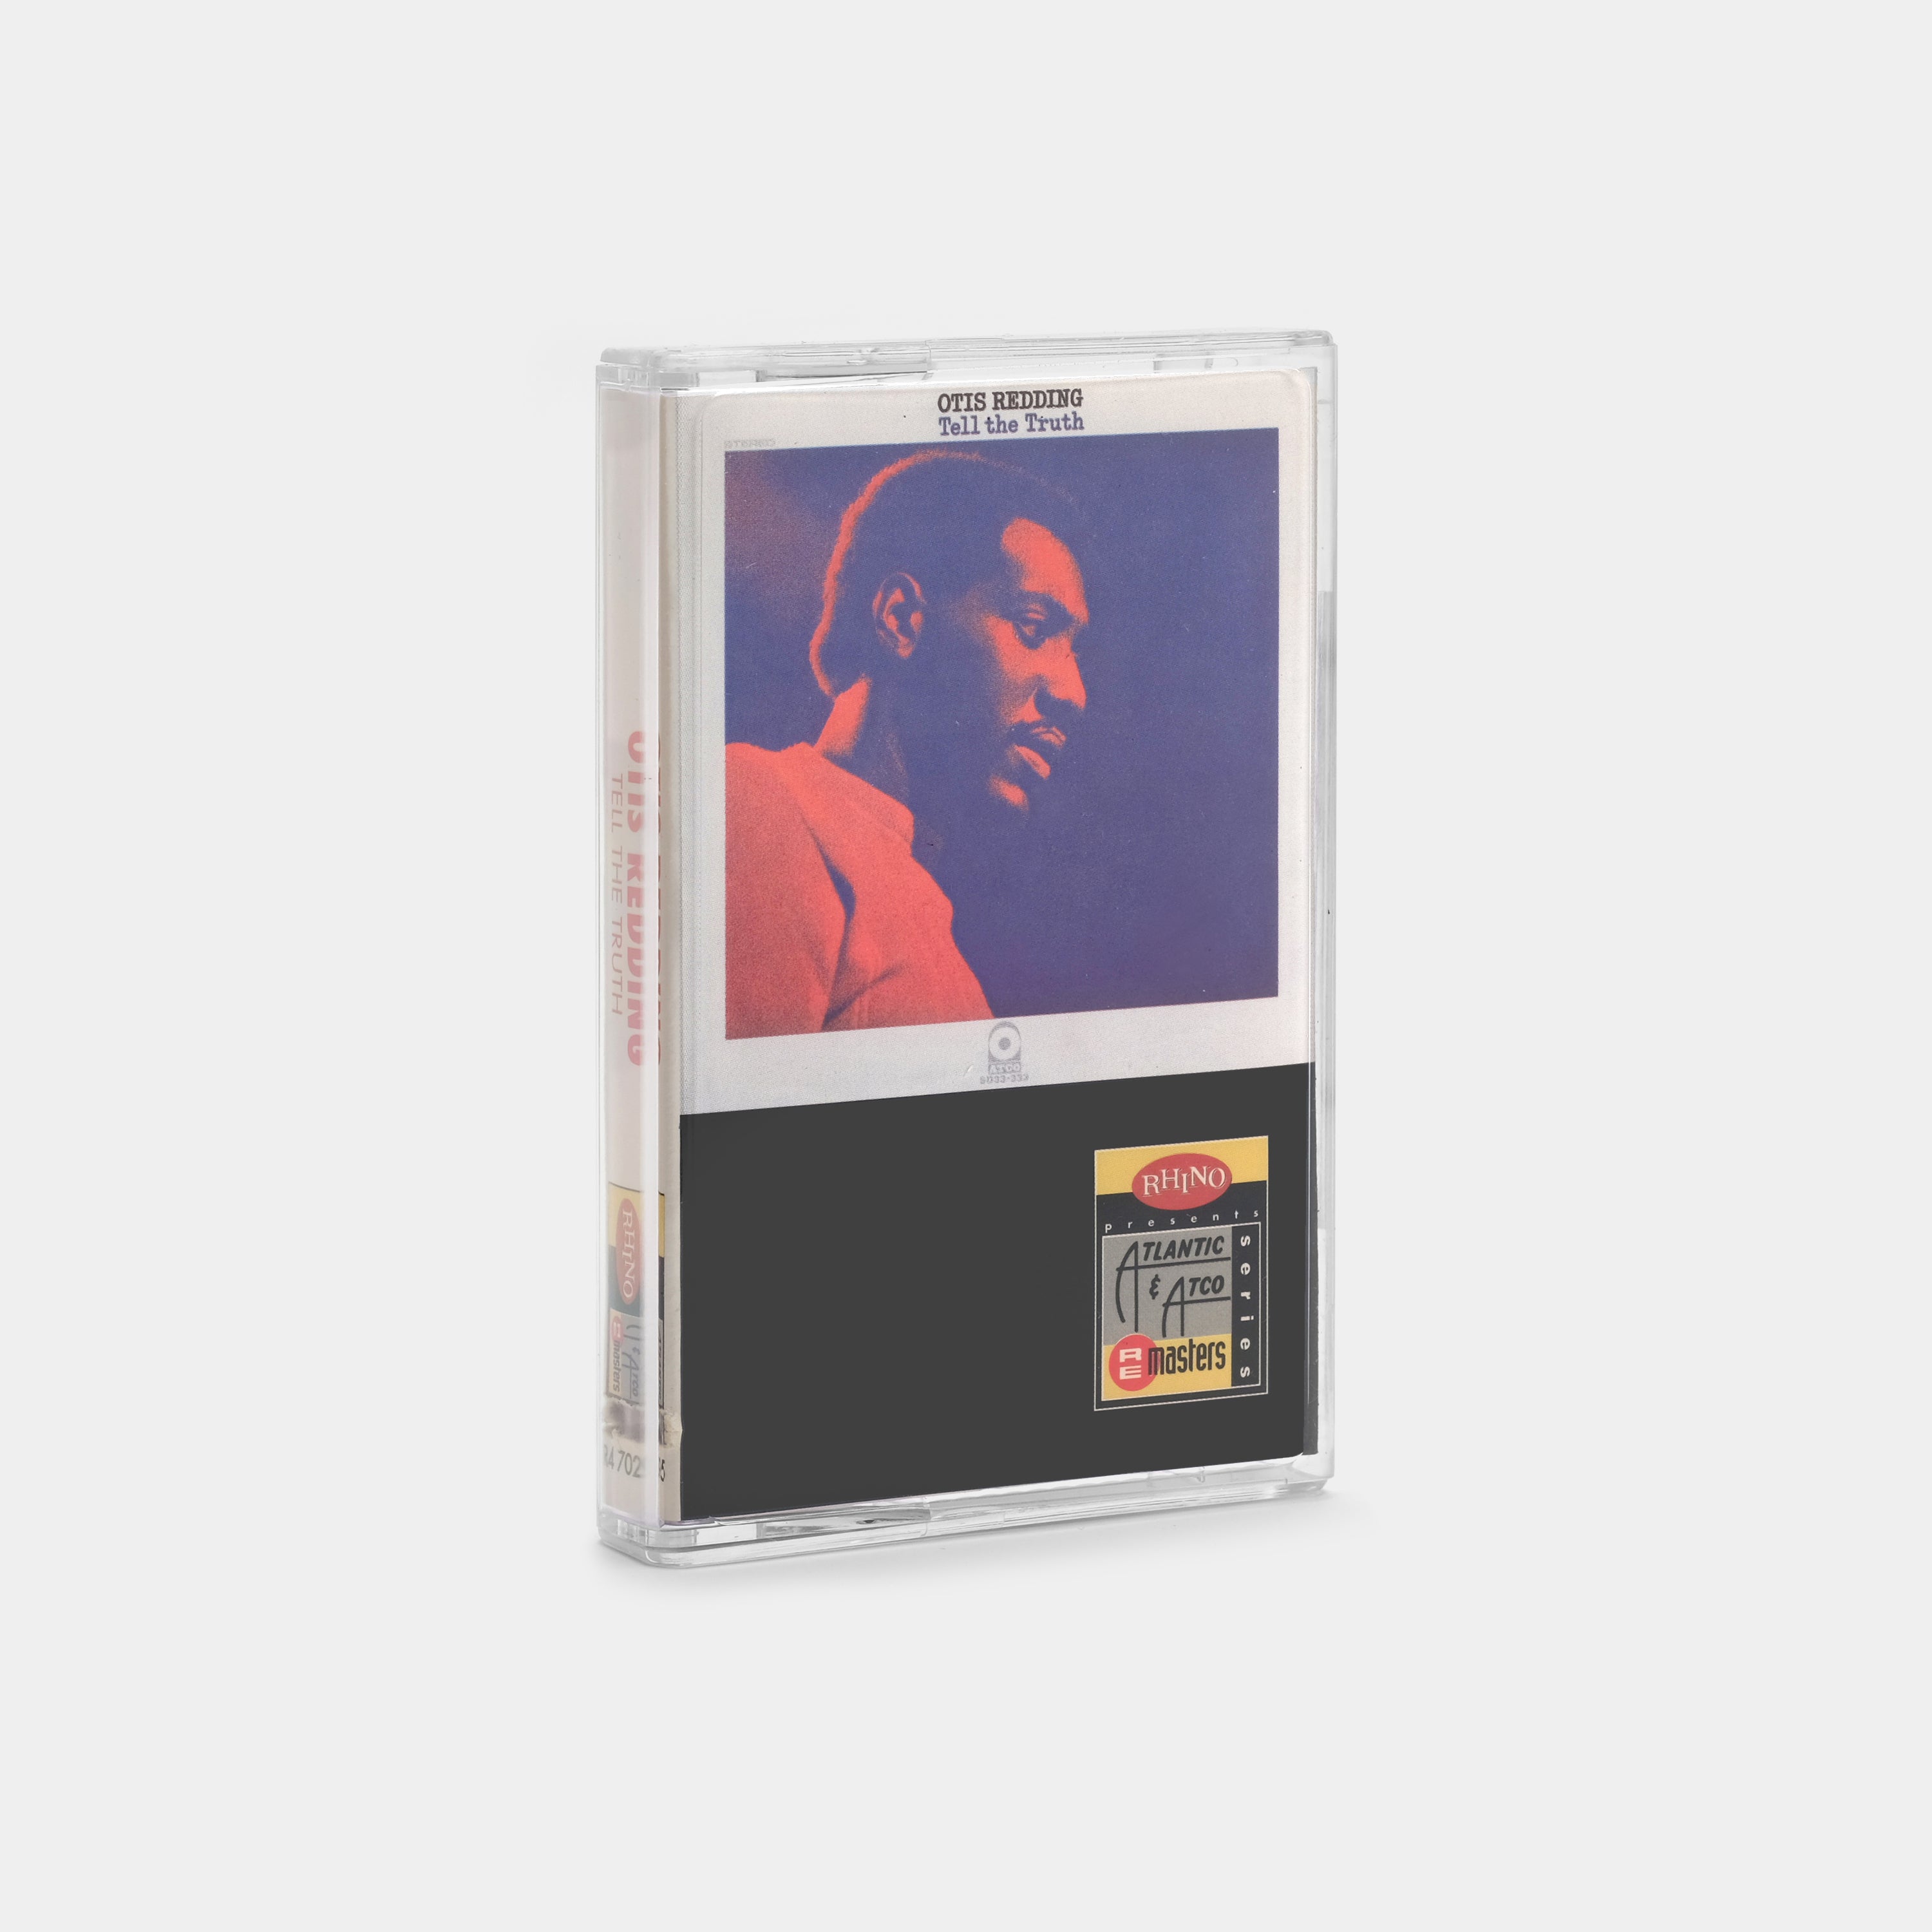 Otis Redding - Tell The Truth Cassette Tape